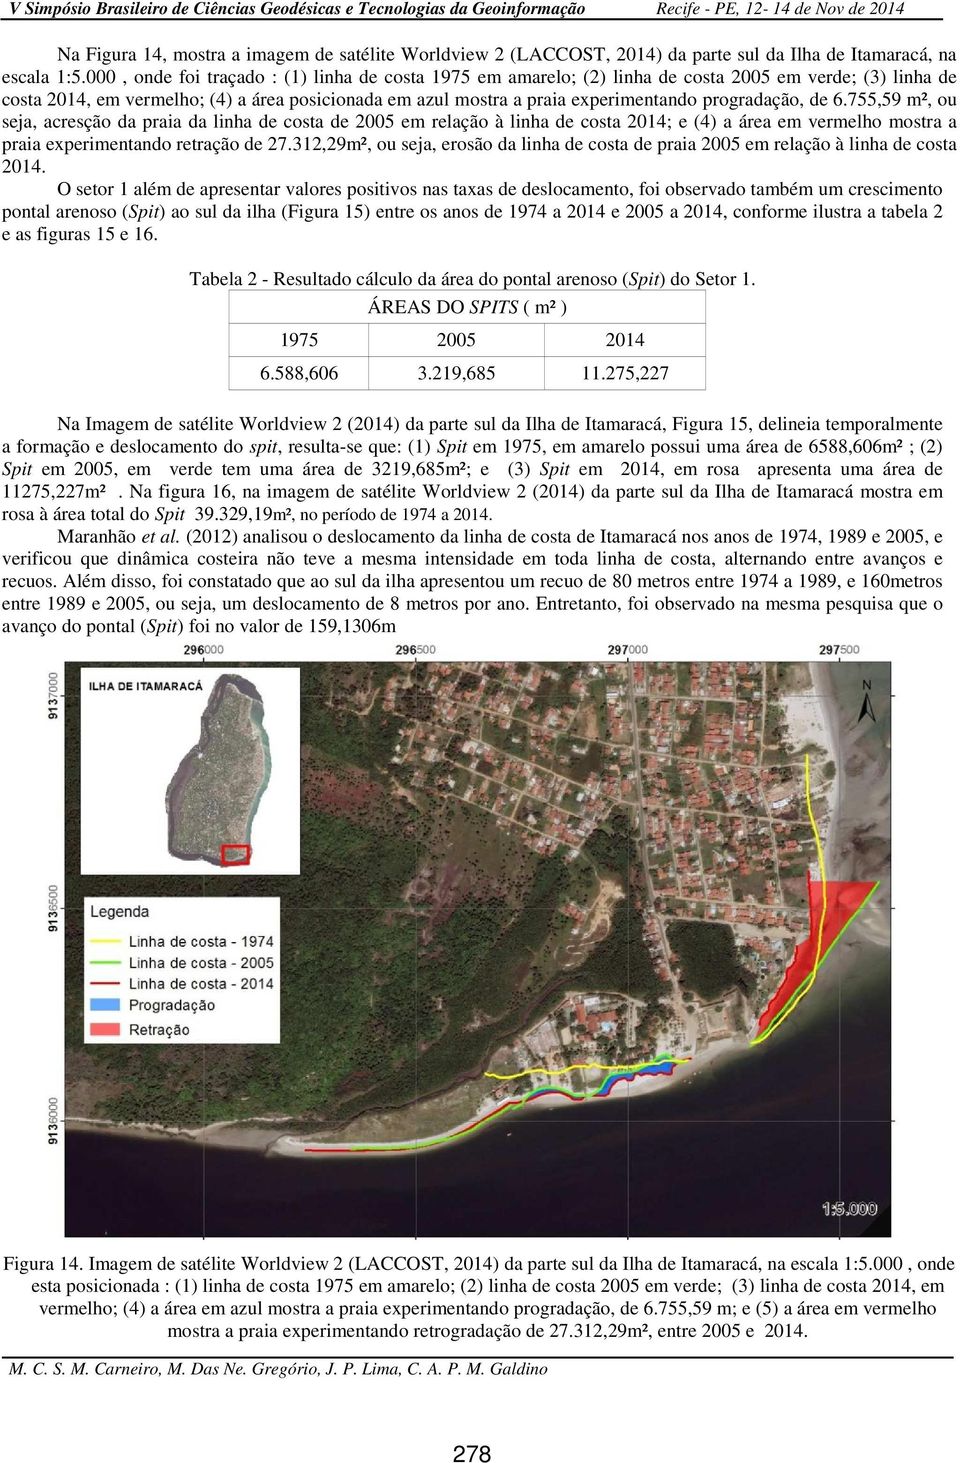 progradação, de 6.755,59 m², ou seja, acresção da praia da linha de costa de 2005 em relação à linha de costa 2014; e (4) a área em vermelho mostra a praia experimentando retração de 27.